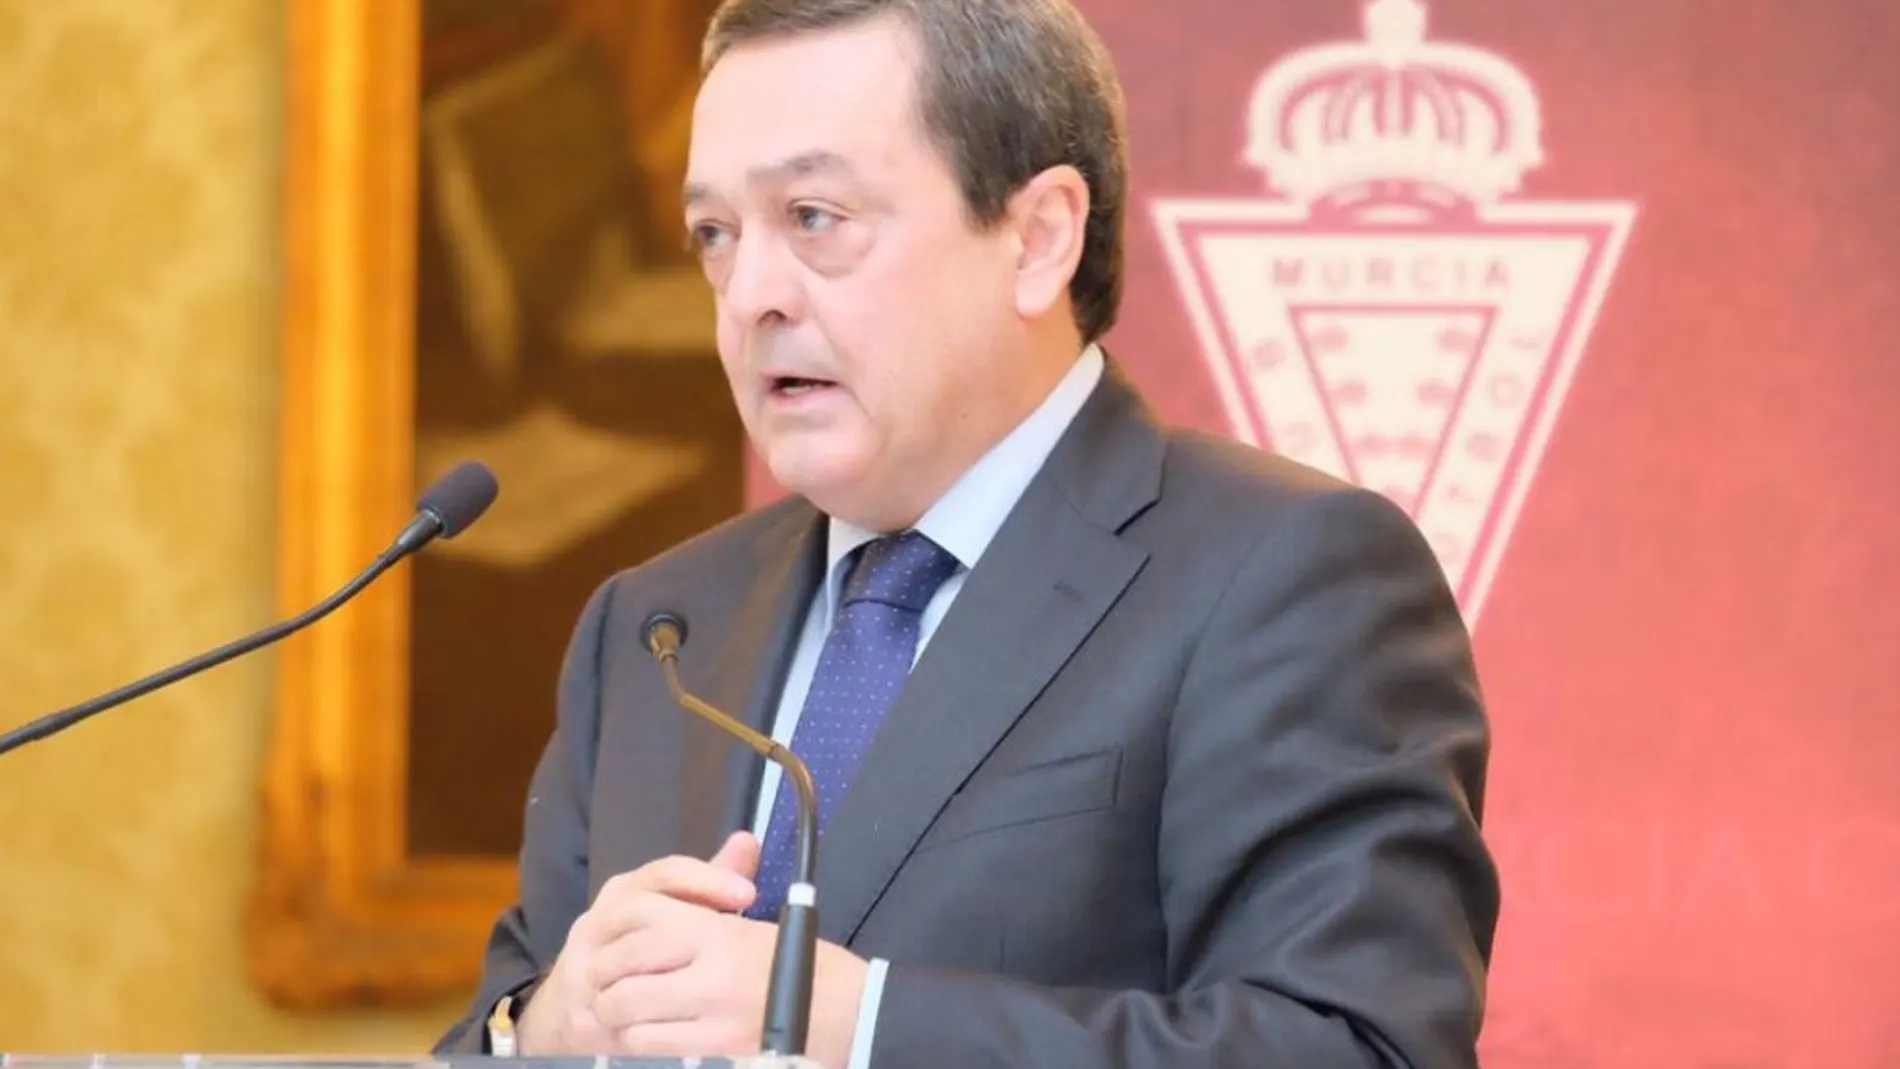 El presidente de la patronal de empresarios de la Región (Croem), José María Albarracín